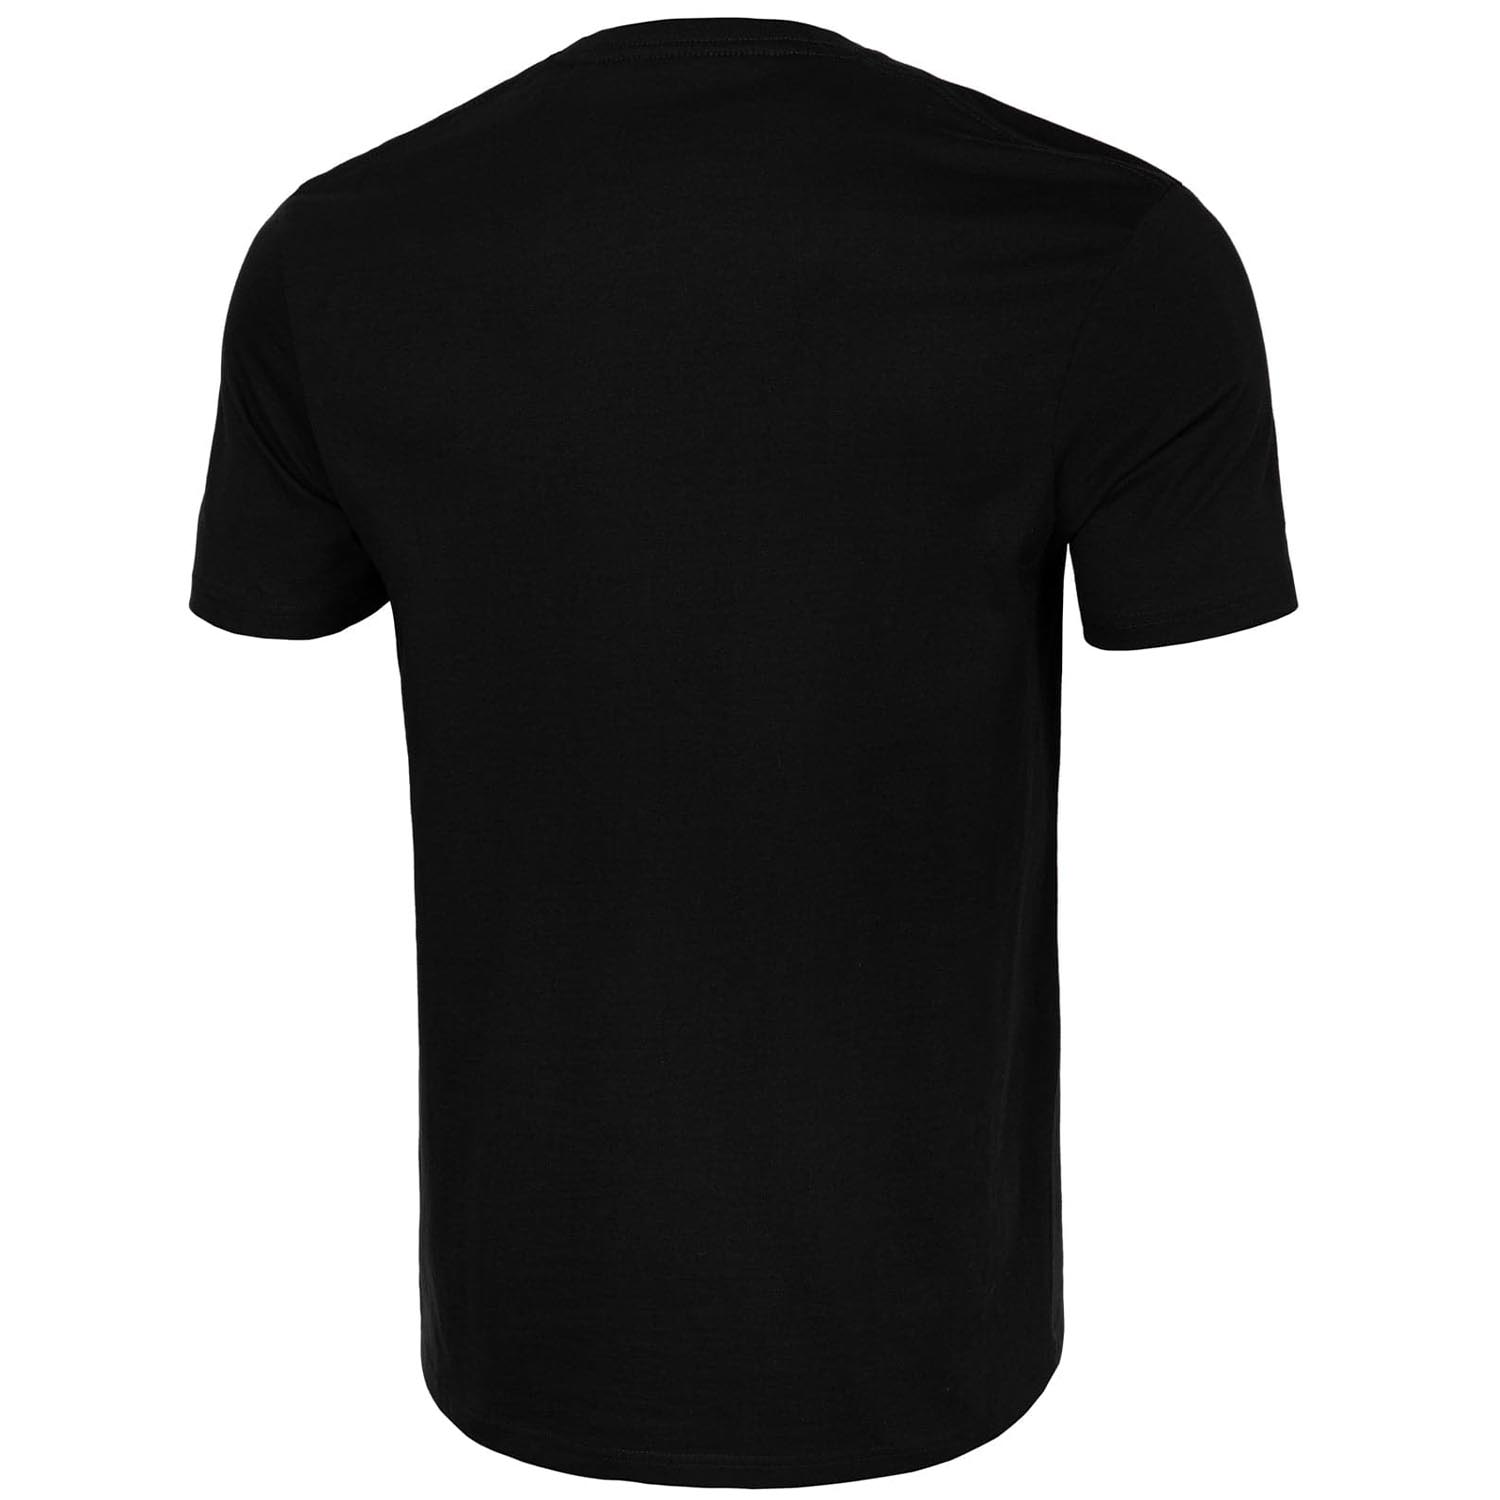 Pit Bull West Coast T-Shirt, San Diego Dog, schwarz, XL | XL | 1341783-4